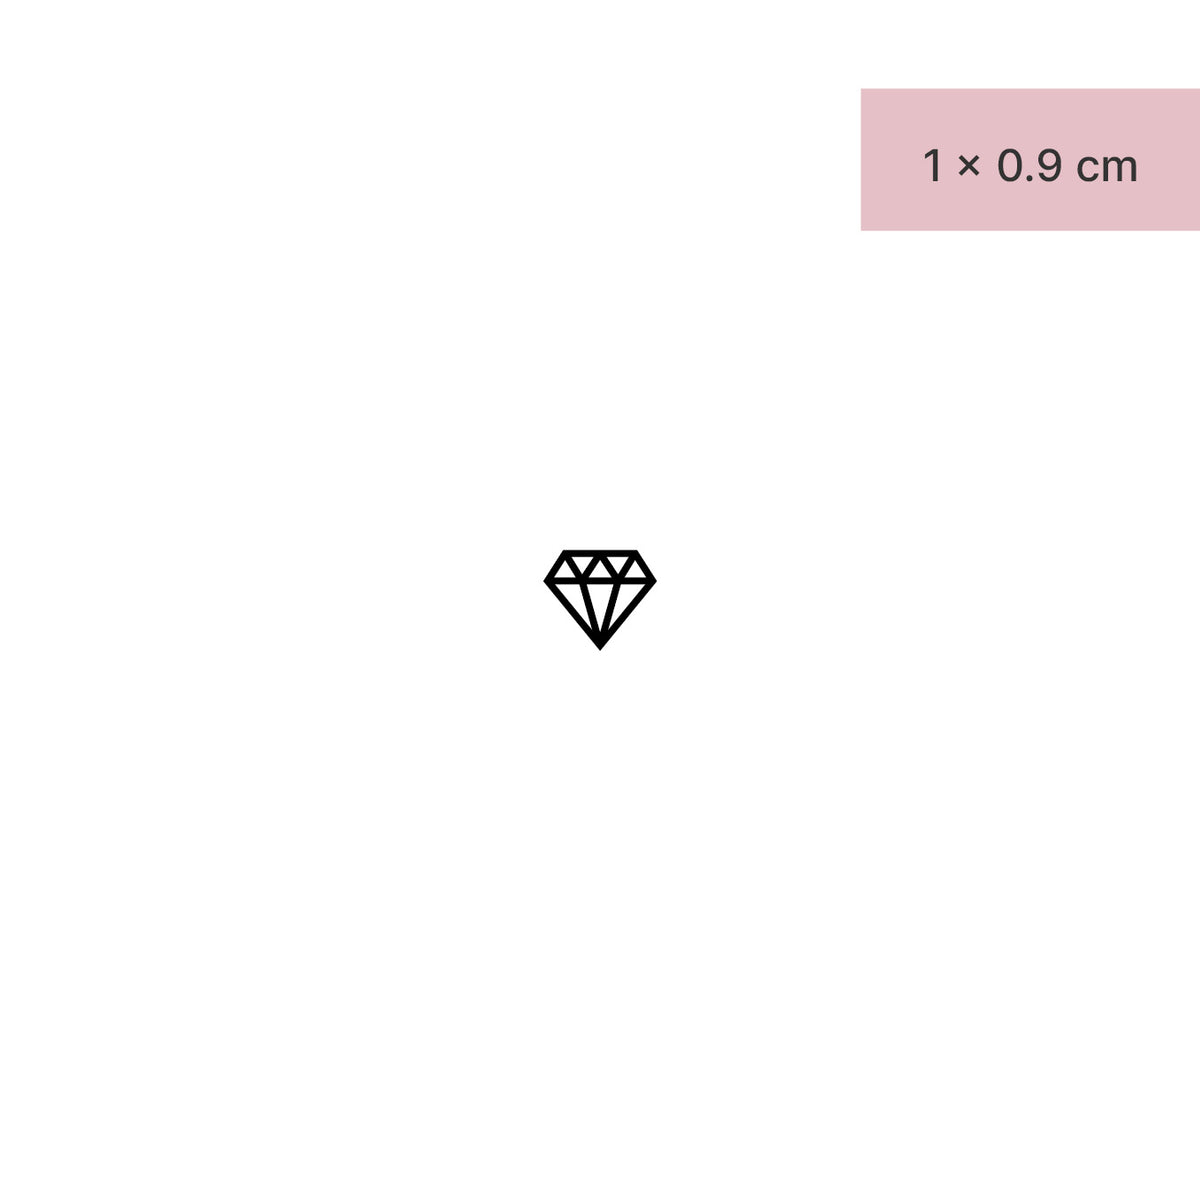 Small diamond